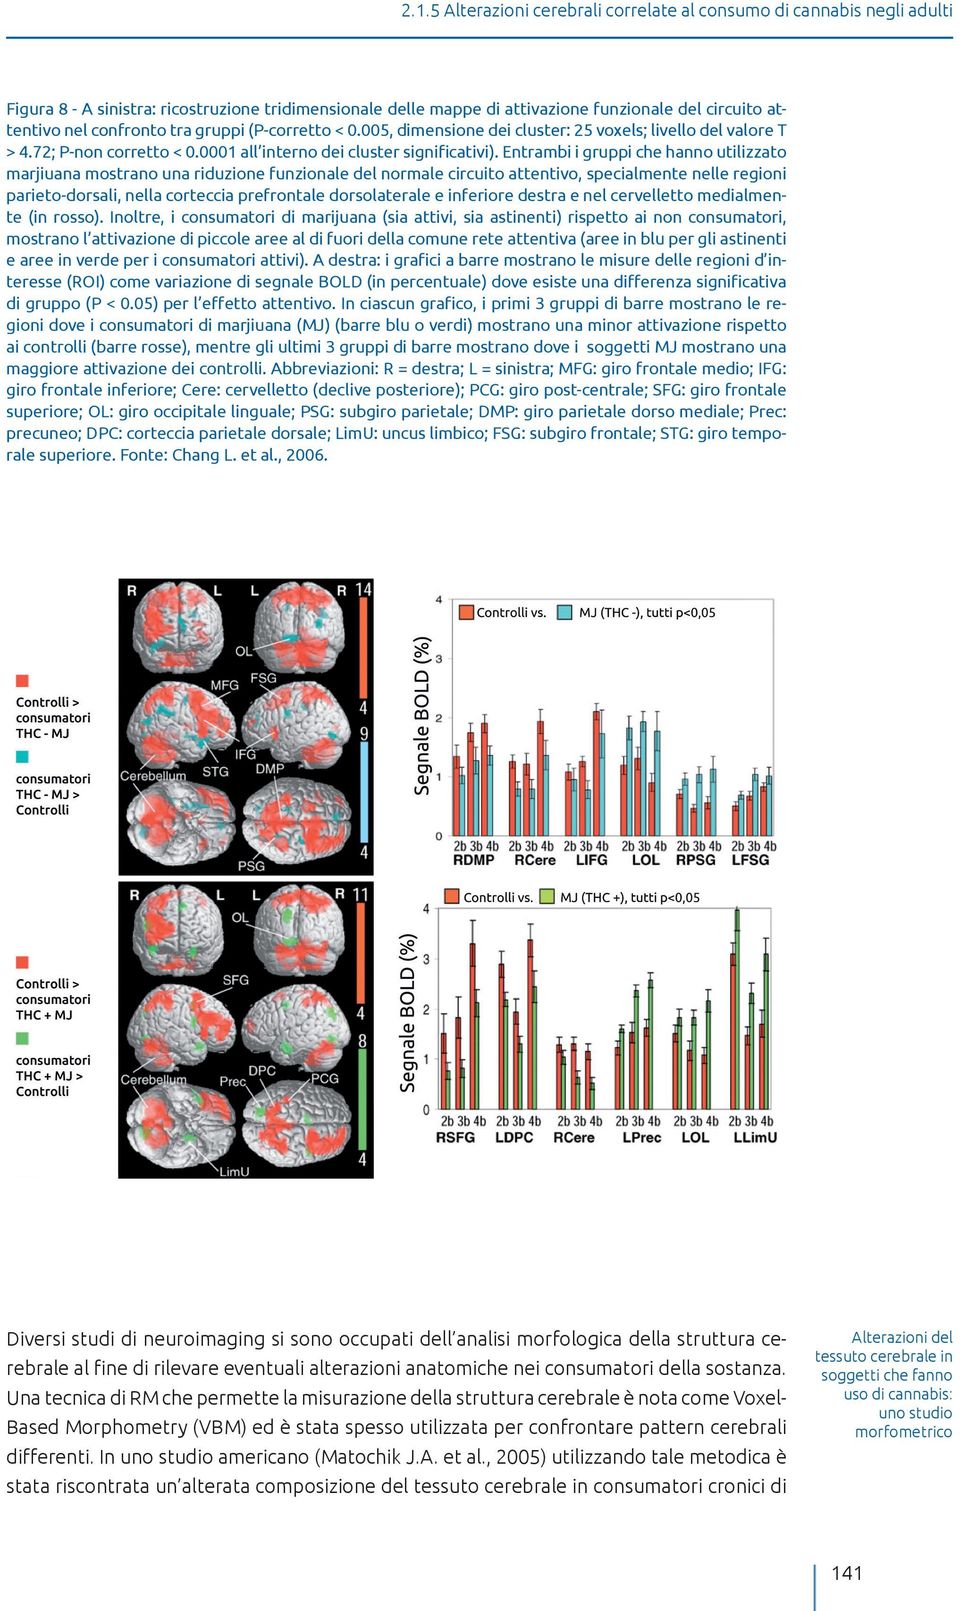 Entrambi i gruppi che hanno utilizzato marjiuana mostrano una riduzione funzionale del normale circuito attentivo, specialmente nelle regioni parieto-dorsali, nella corteccia prefrontale